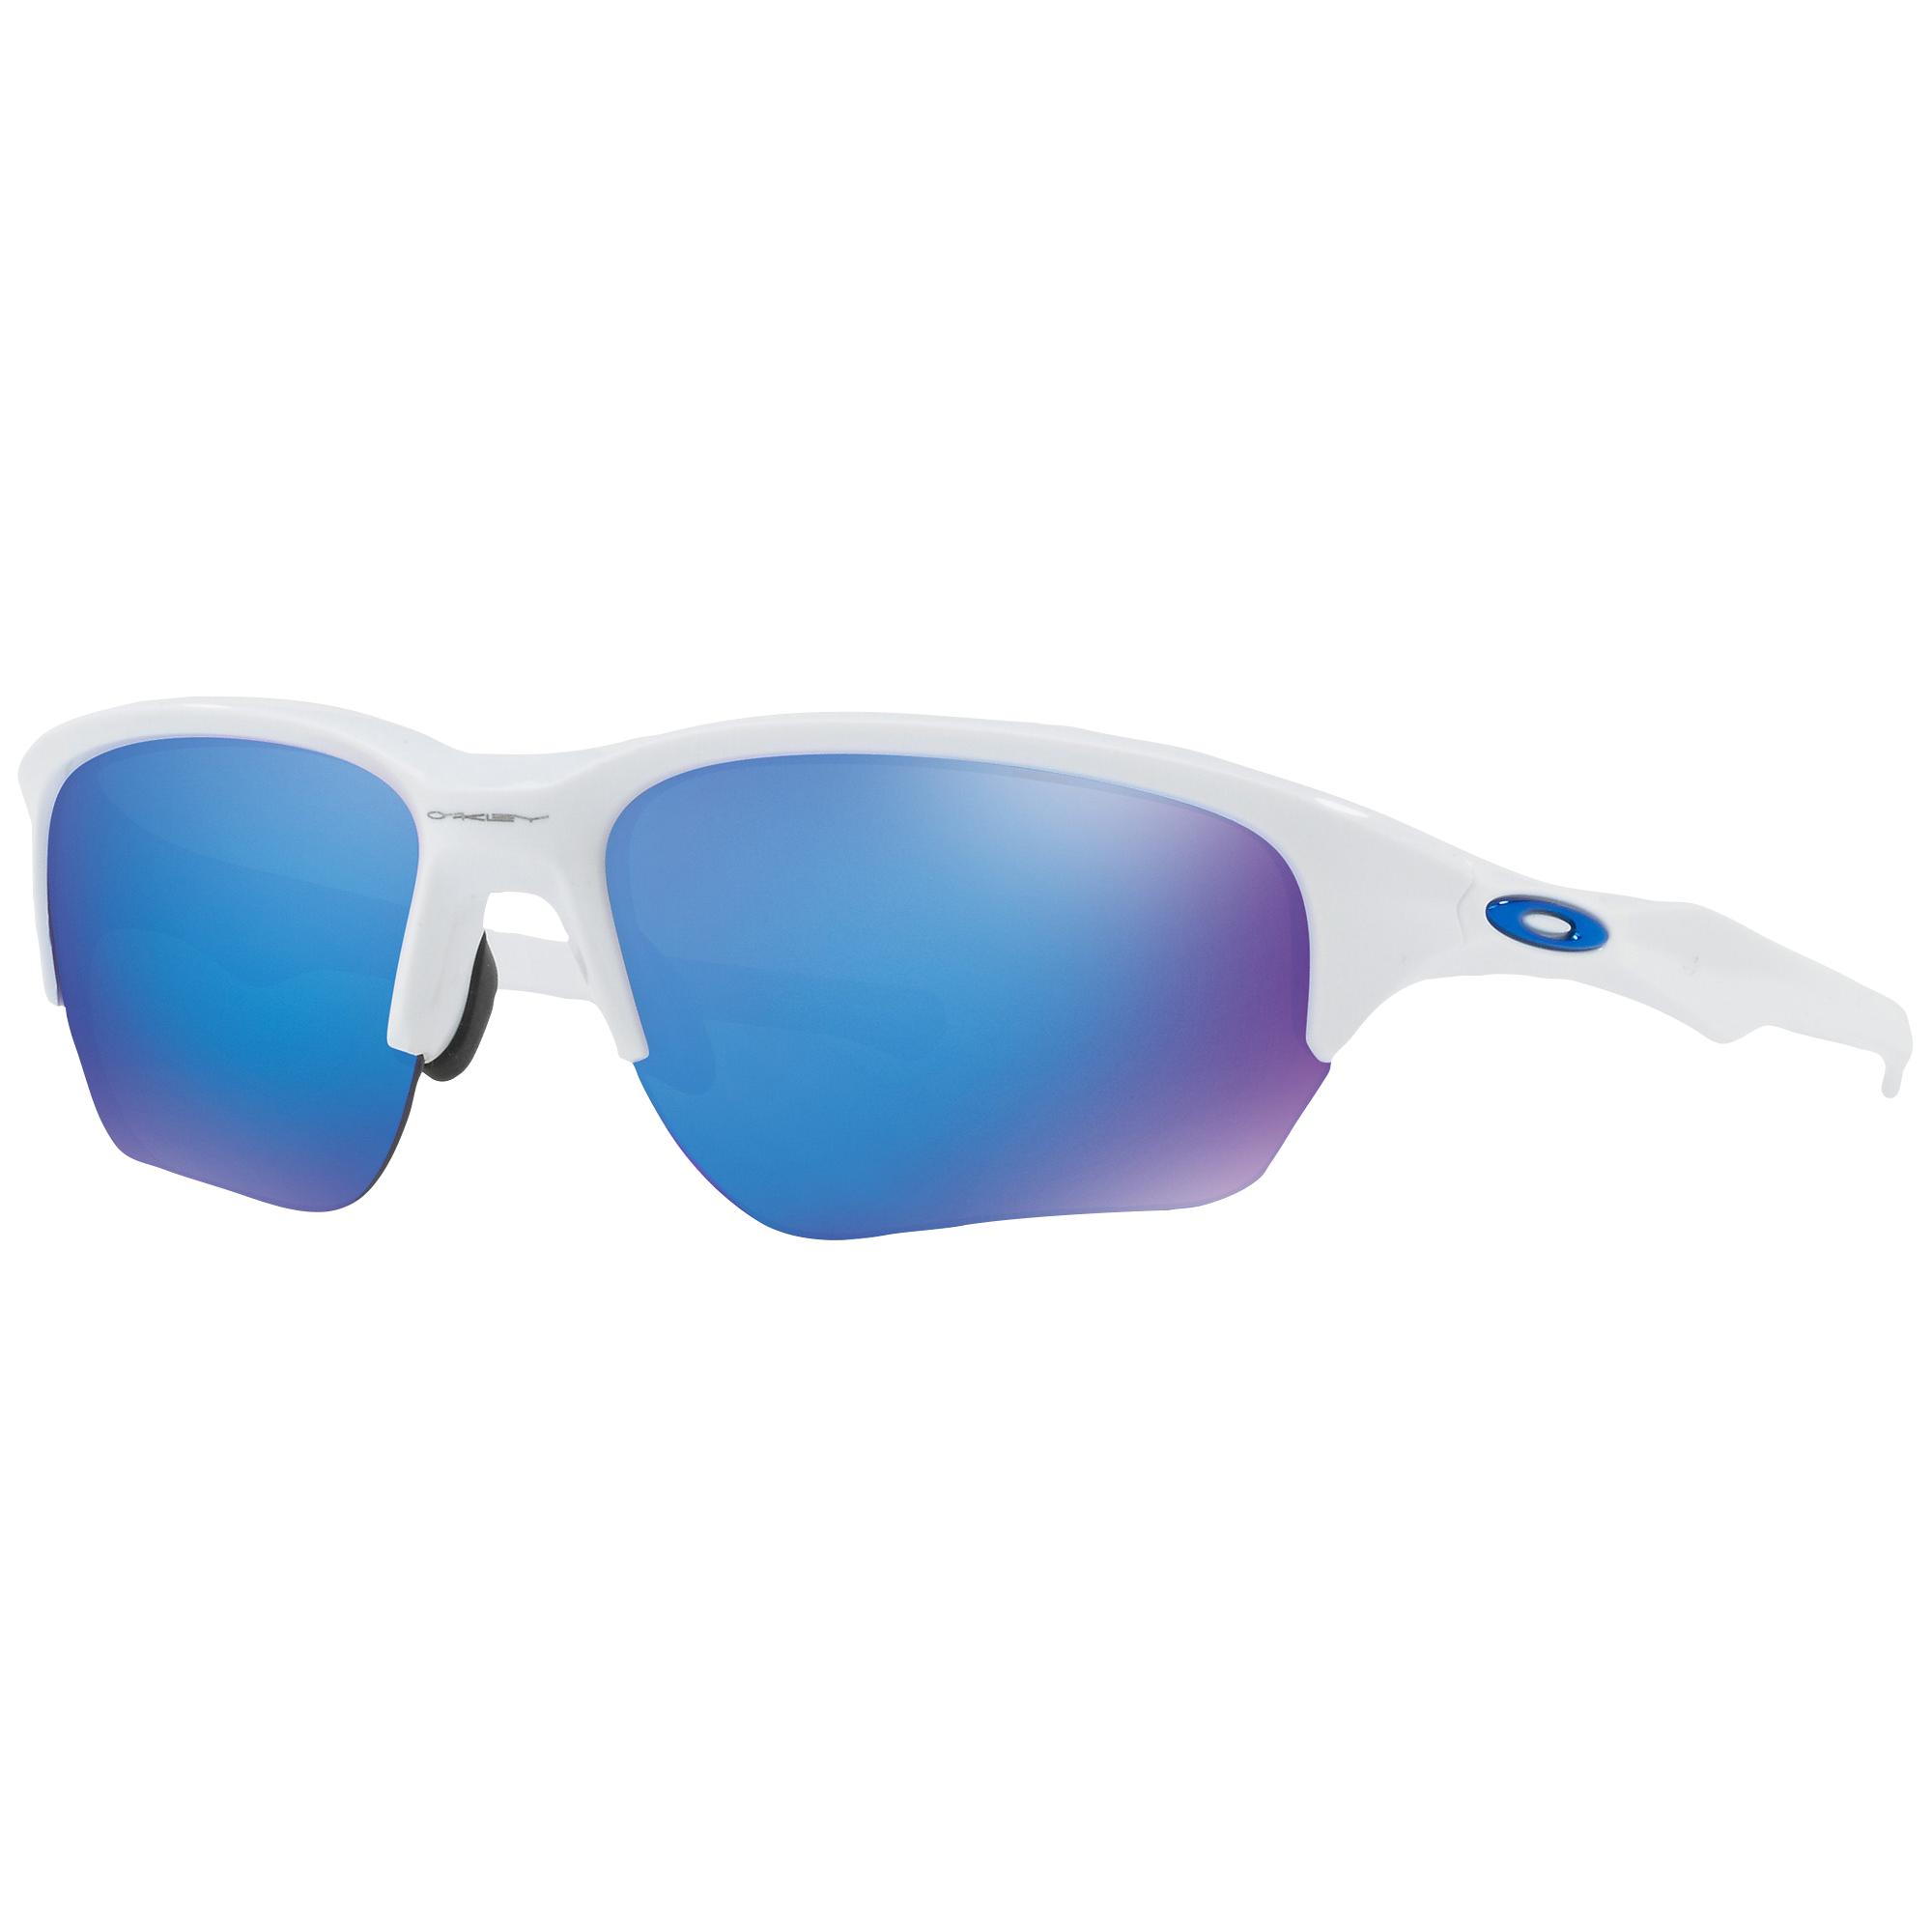 Oakley Flak Beta Sunglasses in Blue for Men - Lyst